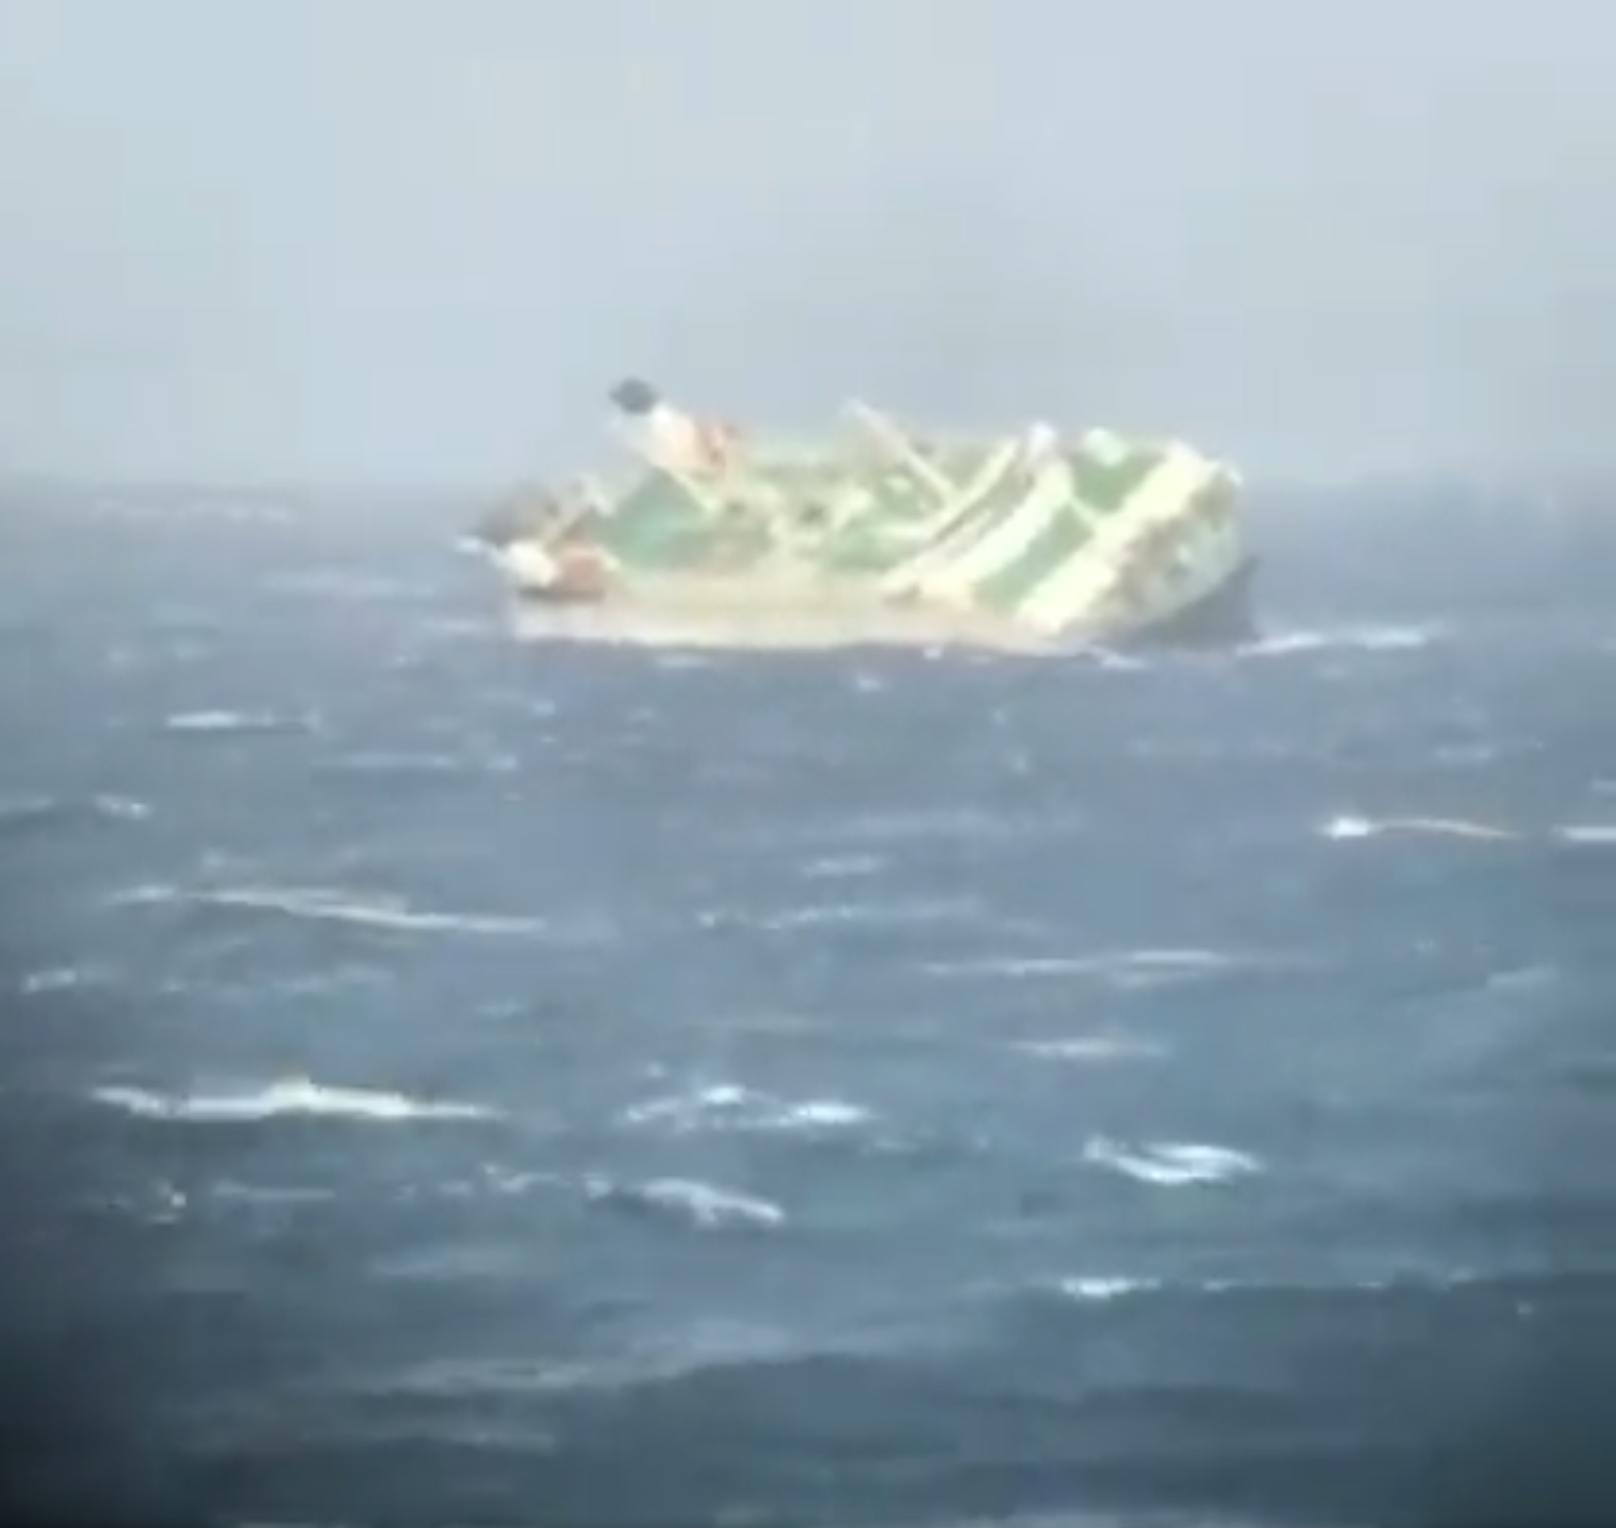 Die iranische Marine veröffentlichte Aufnahmen des Einsatzes zur Rettung der Besatzung. Ein Großteil der Personen konnte von dem Schiff geborgen werden. Zwei Menschen werden vermisst. Nach ihnen wird noch immer gesucht.